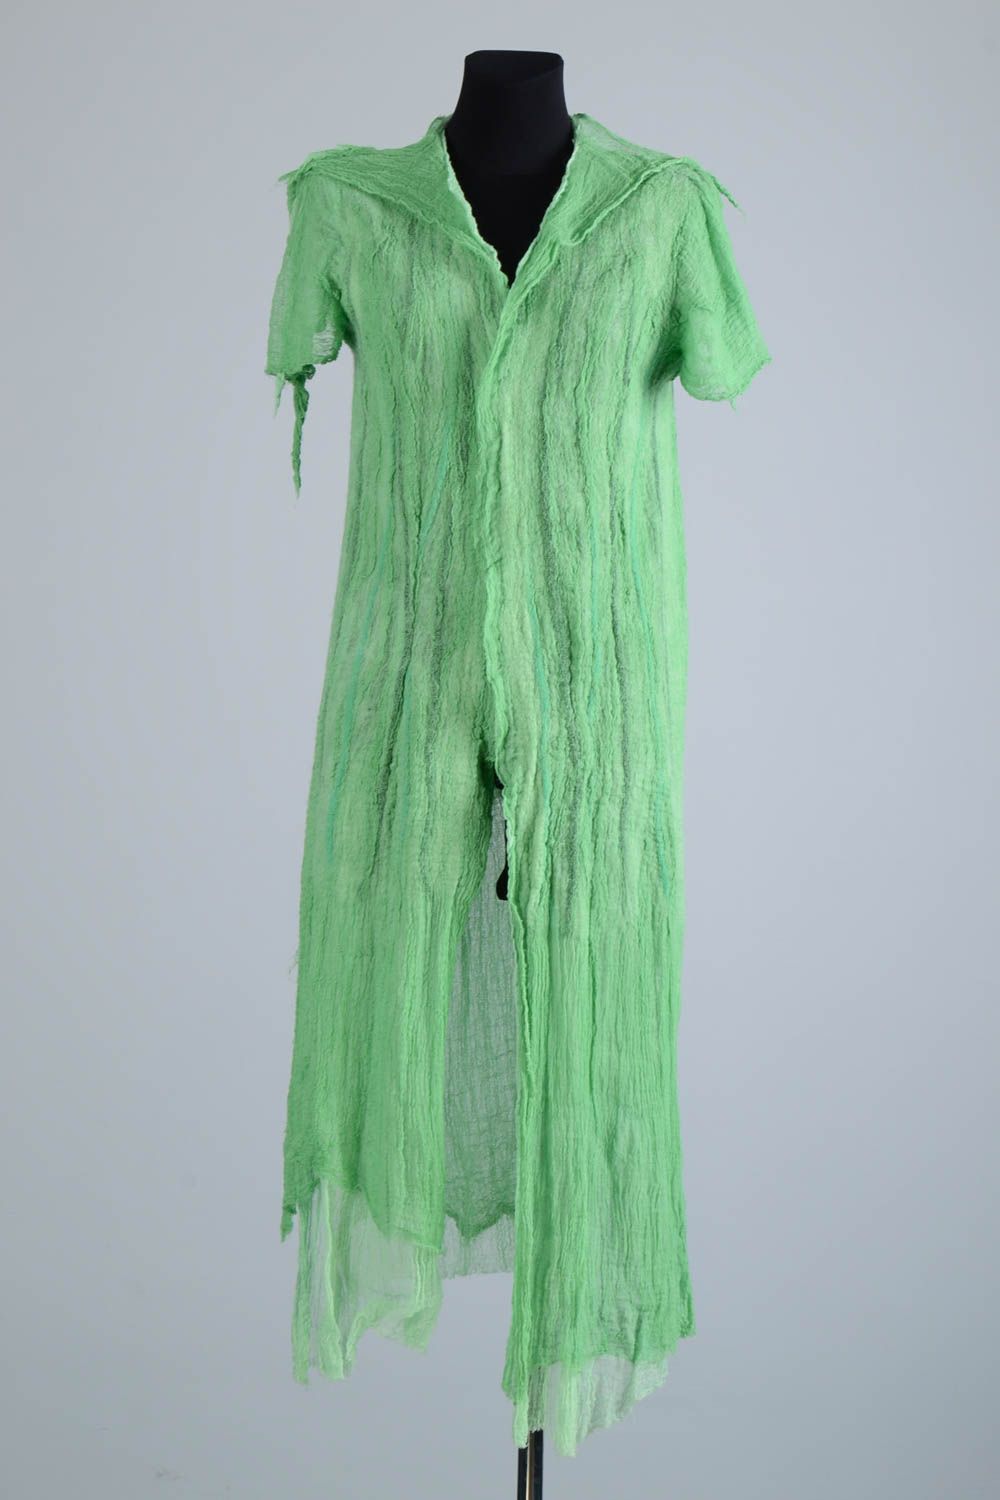 Abrigo de lana artesanal para verano verde ropa para mujer regalo original foto 1